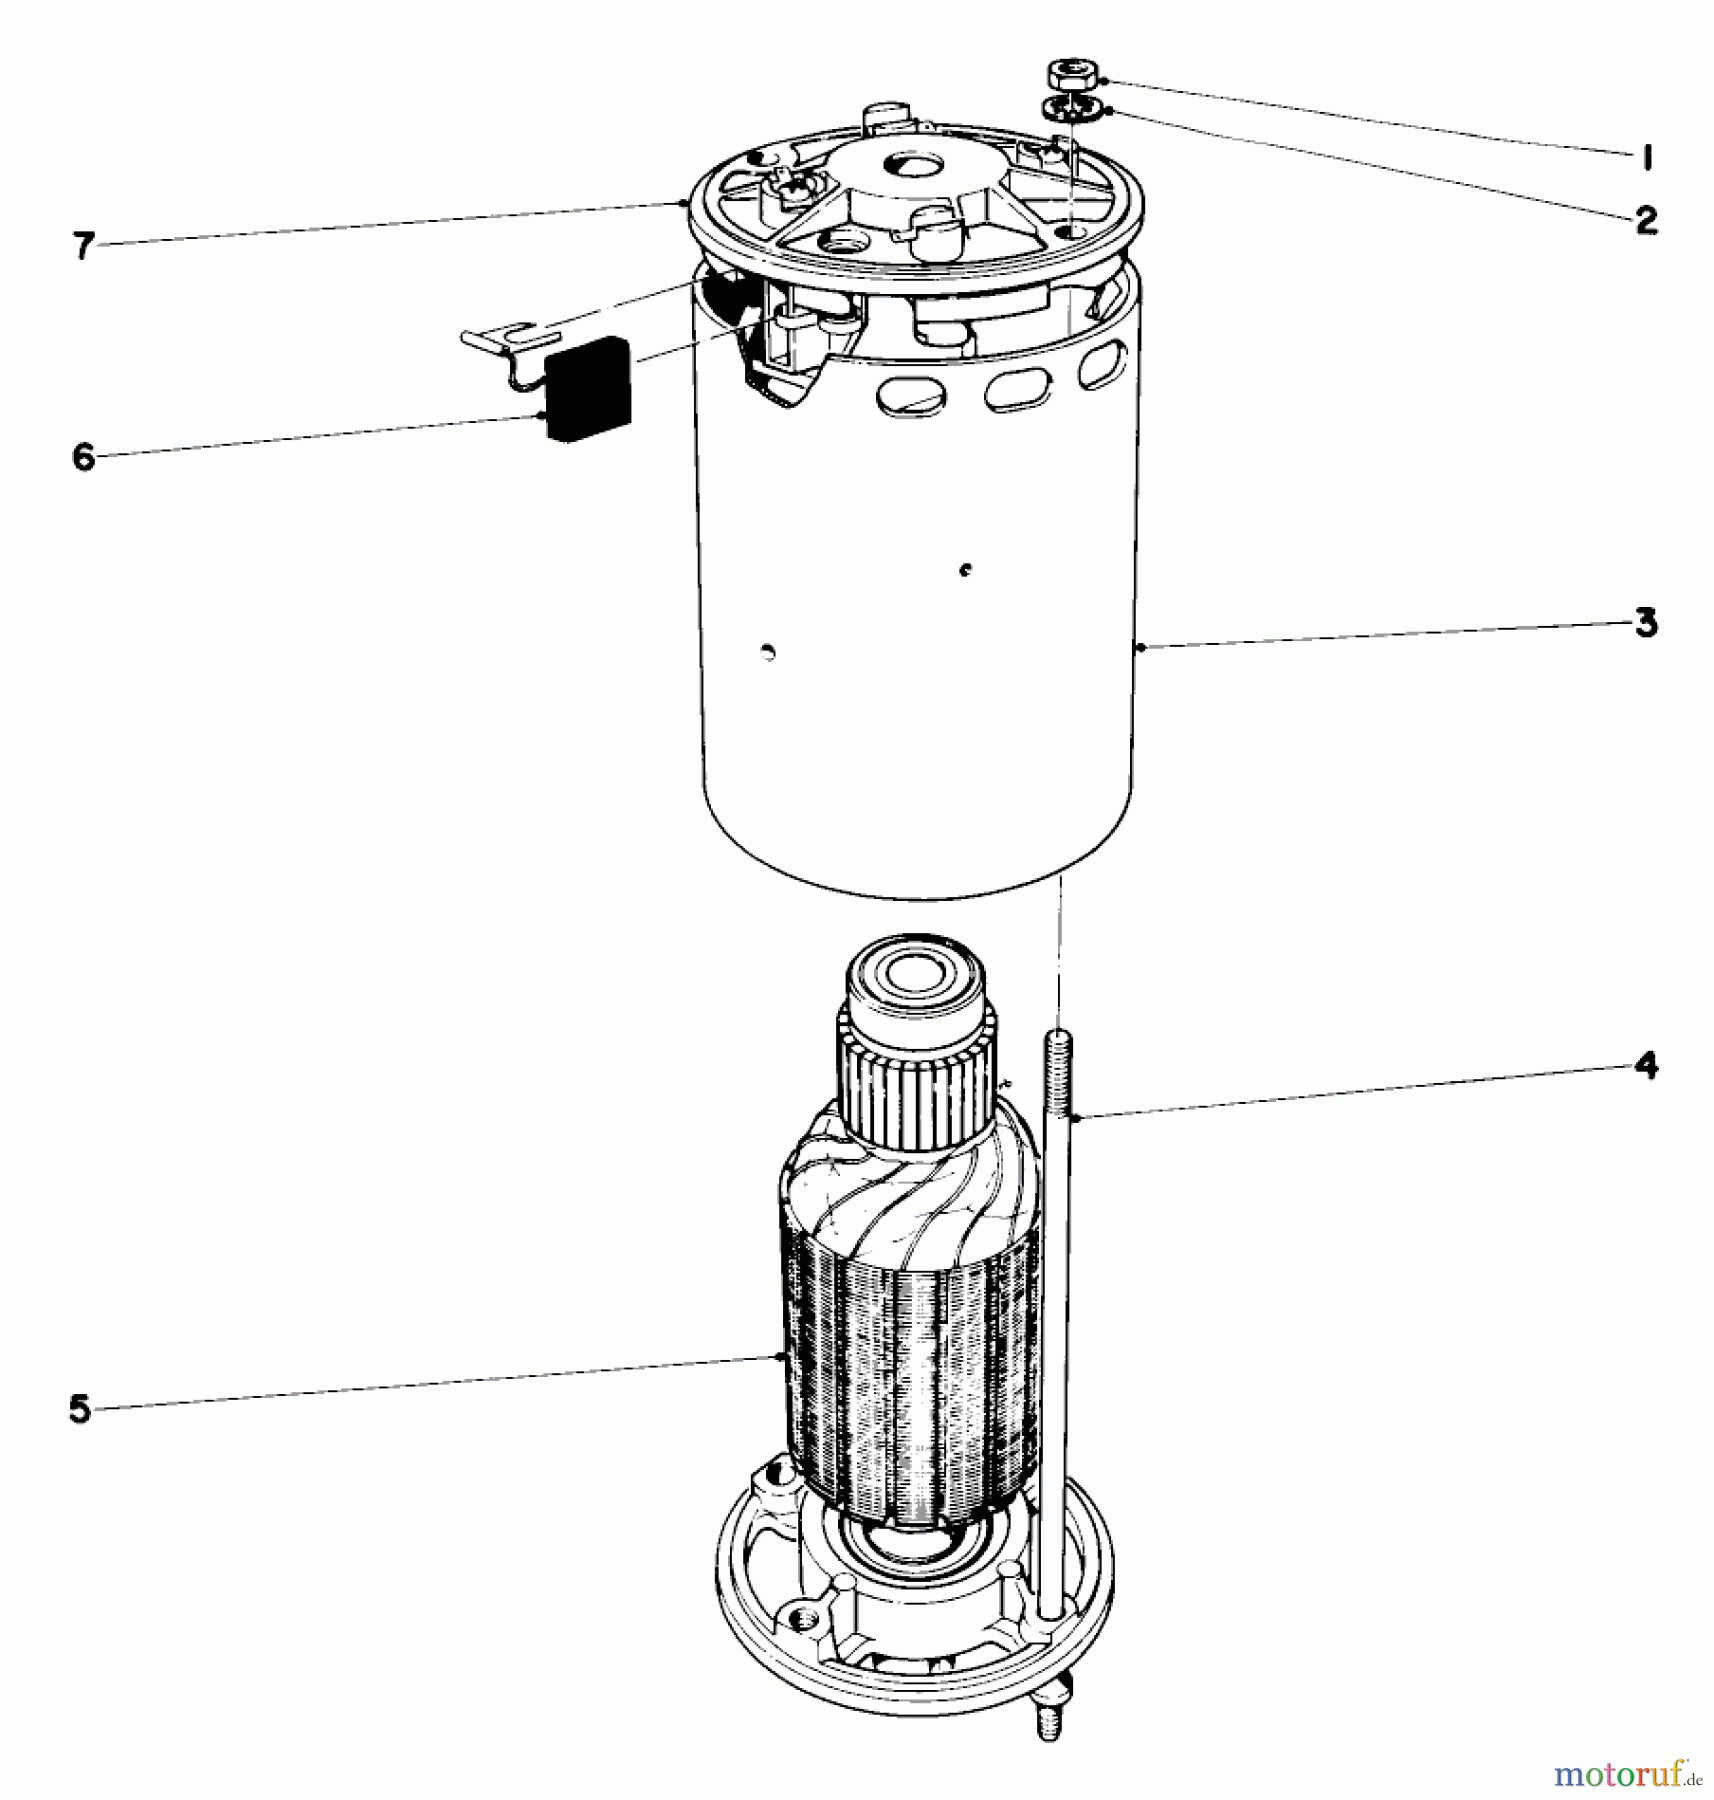  Toro Neu Mowers, Electric 18302 - Toro Electric Whirlwind Lawnmower, 1969 (9000001-9999999) ELECTRIC MOTOR